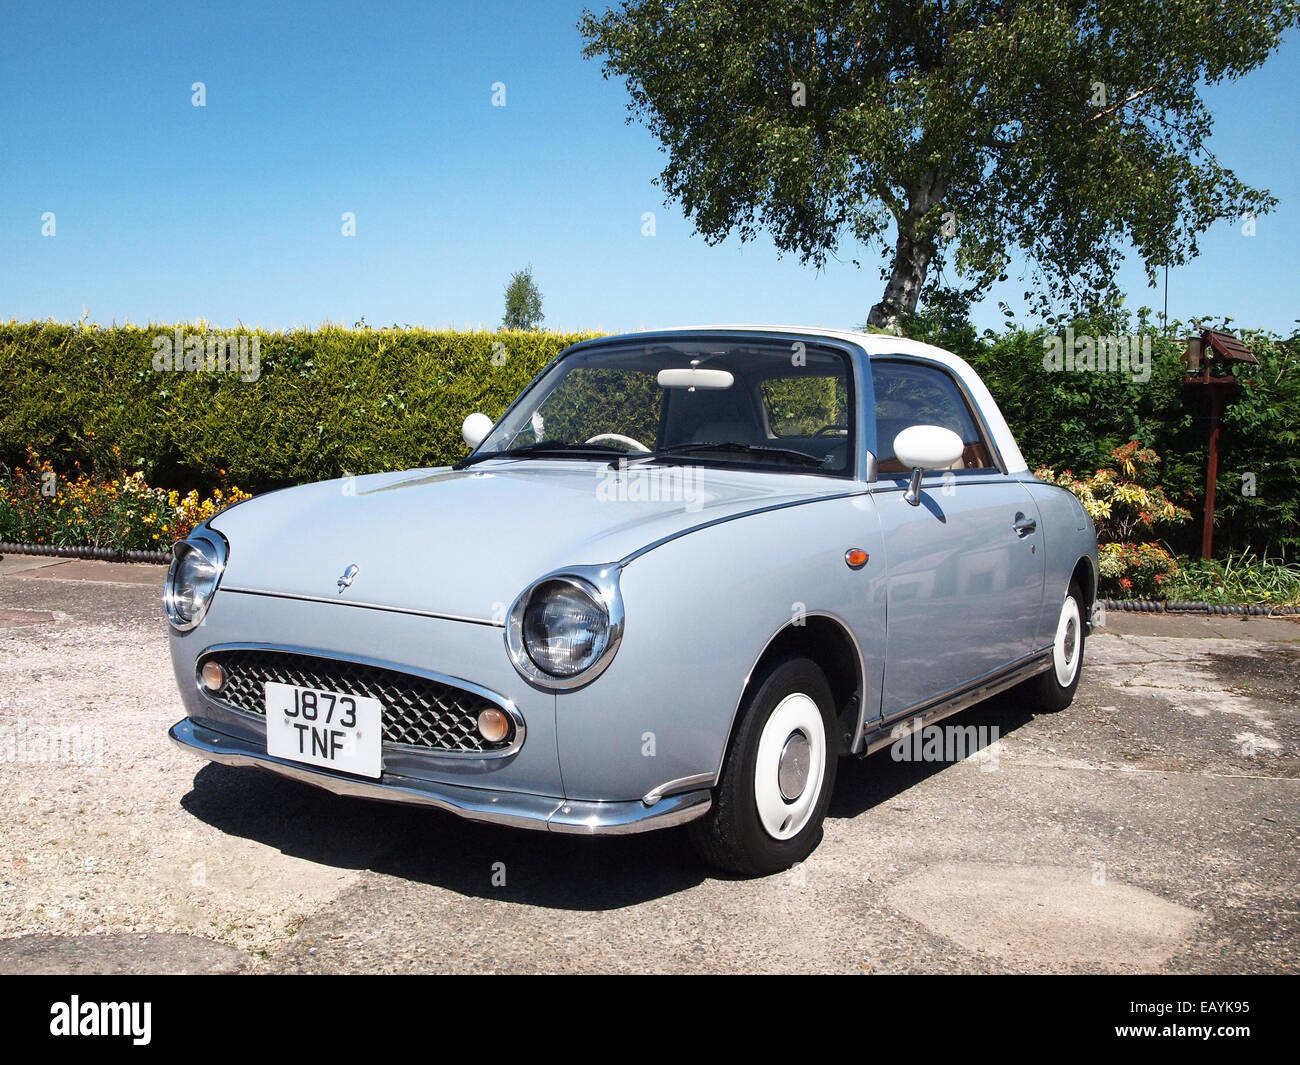 Voiture Nissan Figaro import japonais en couleur gris Lapis rétro voiture rare édition limitée Banque D'Images